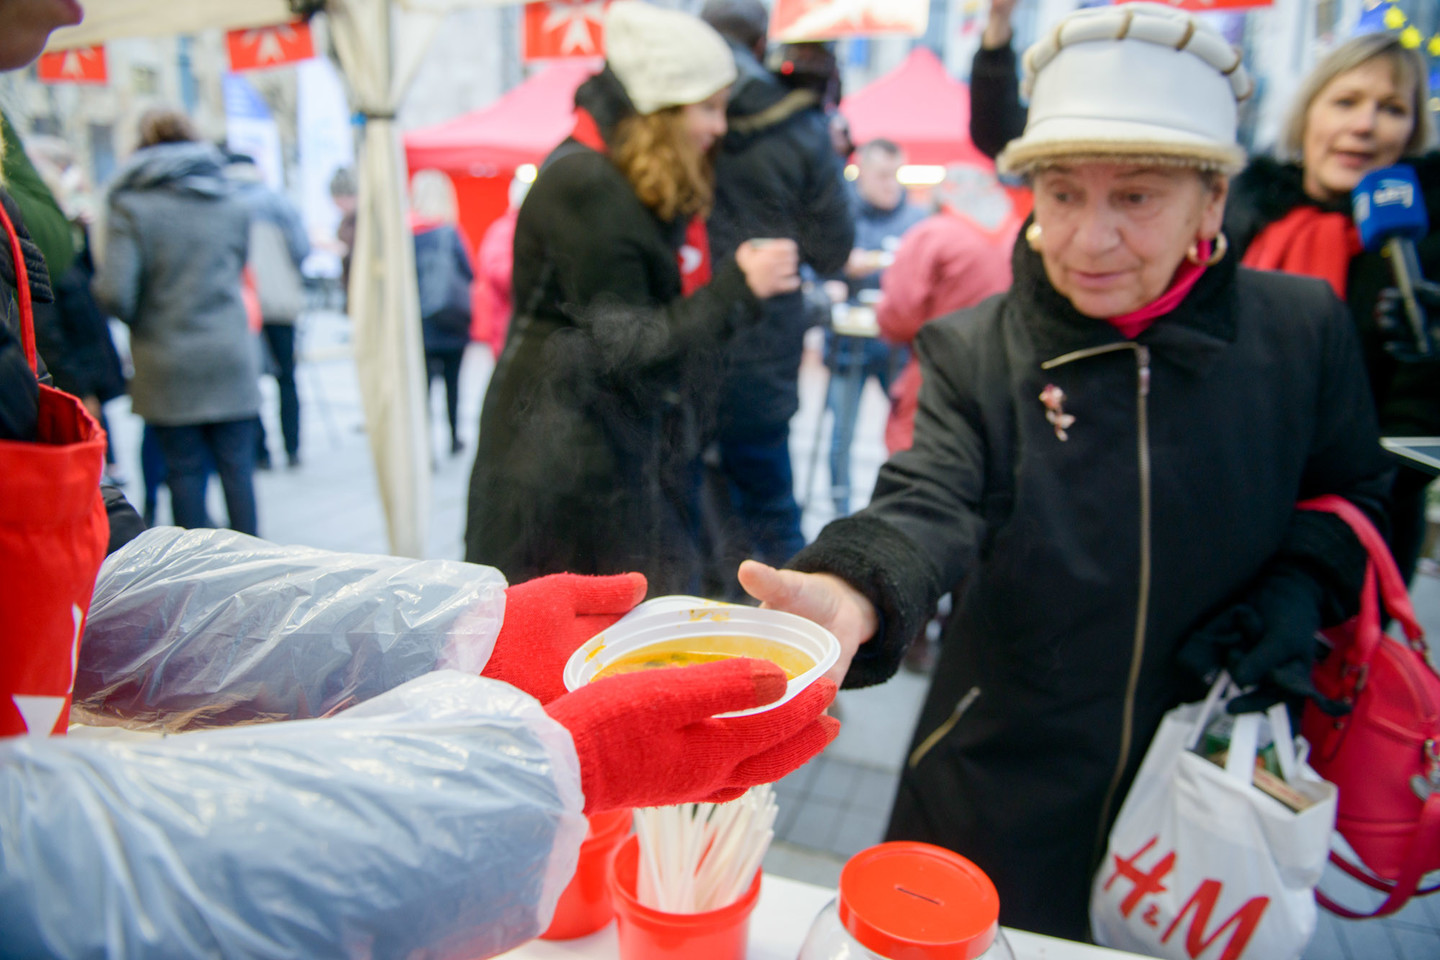 Akcija „Maltiečių sriuba“ šiemet vyksta jau dvyliktą kartą.<br> J. Stacevičiaus nuotr.